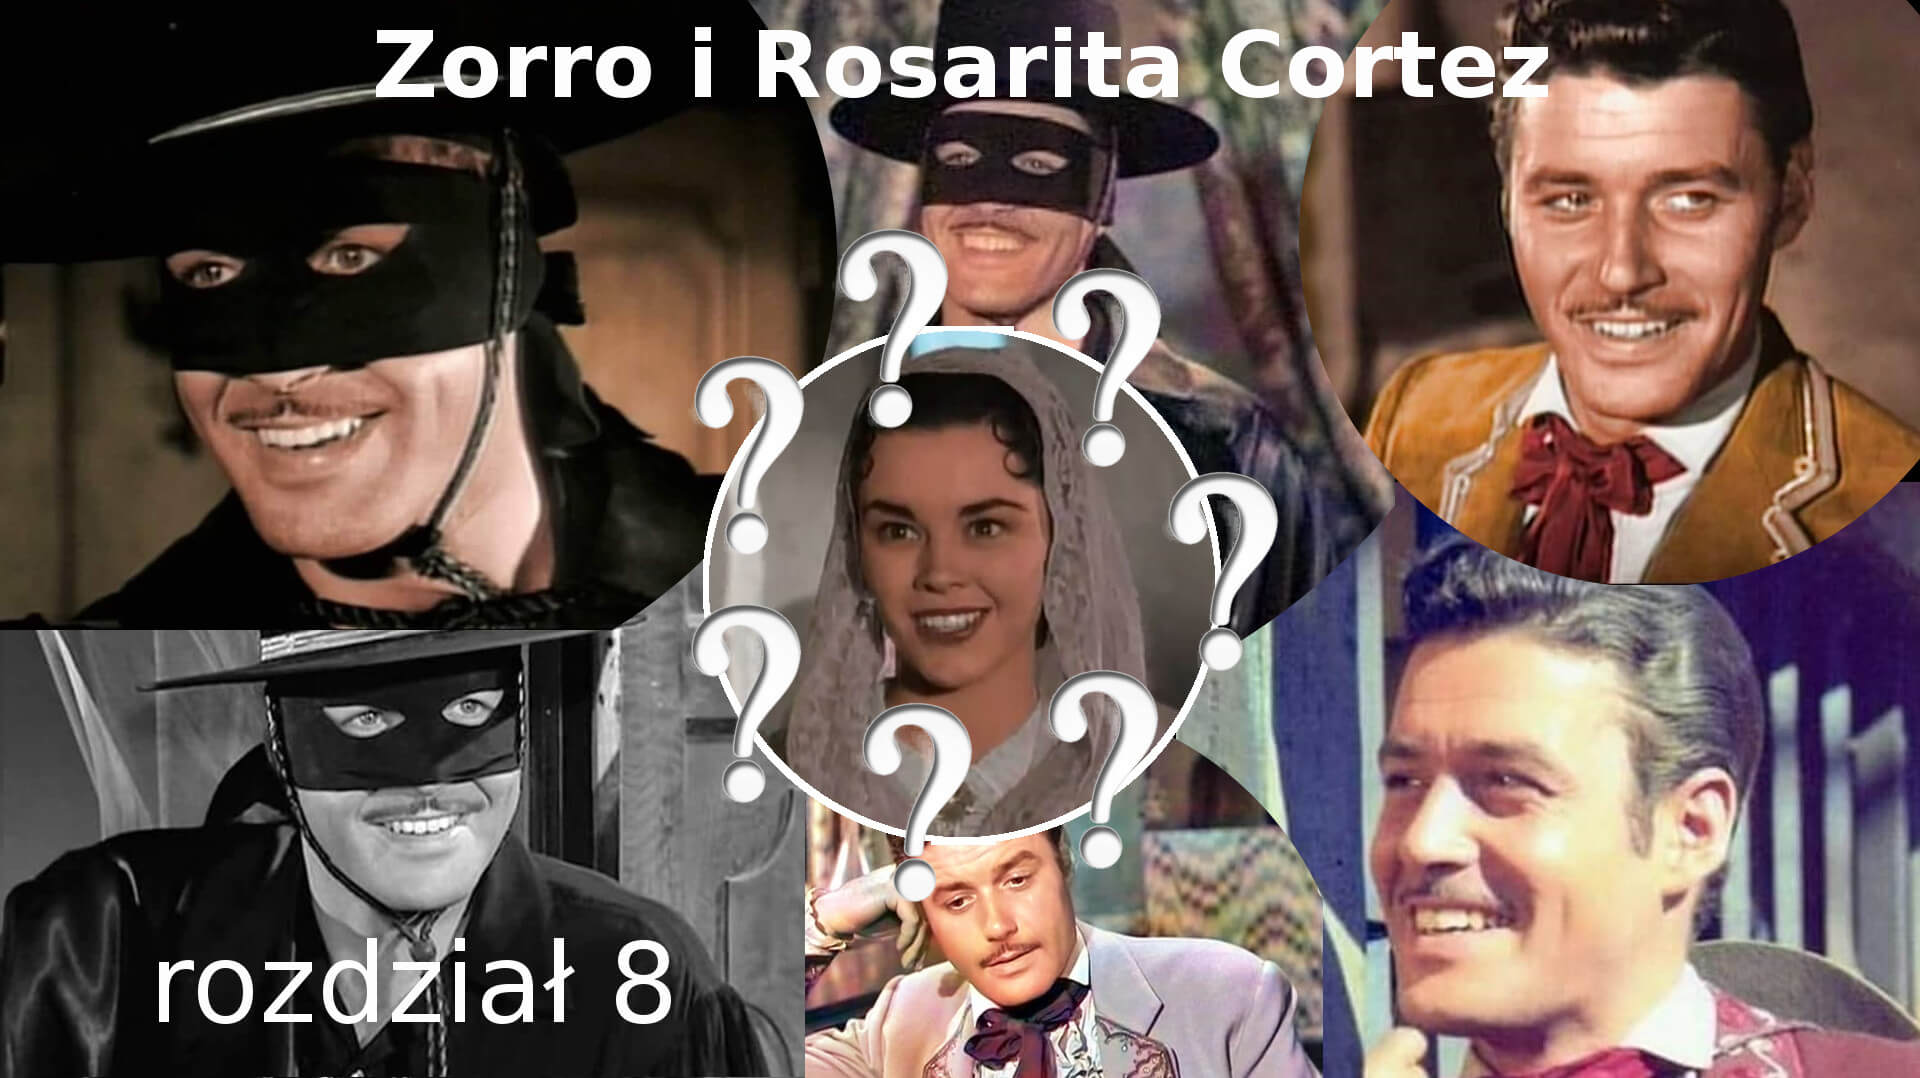 Zorro i Rosarita Cortez rozdział 8 Zorro fanfiction